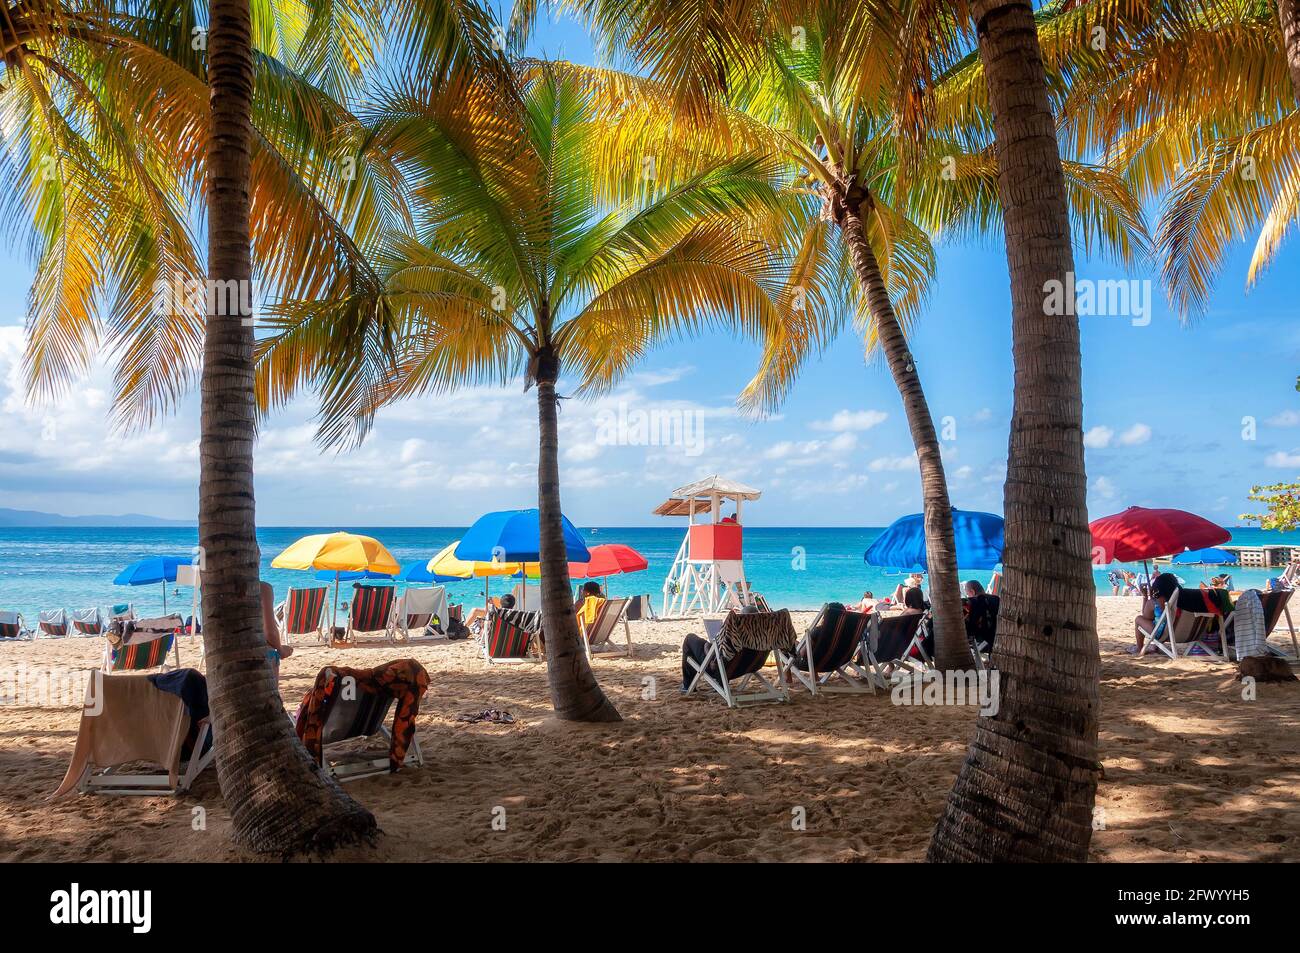 Palmiers sur la plage tropicale dans la mer des Caraïbes, Montego Bay, Jamaïque Banque D'Images